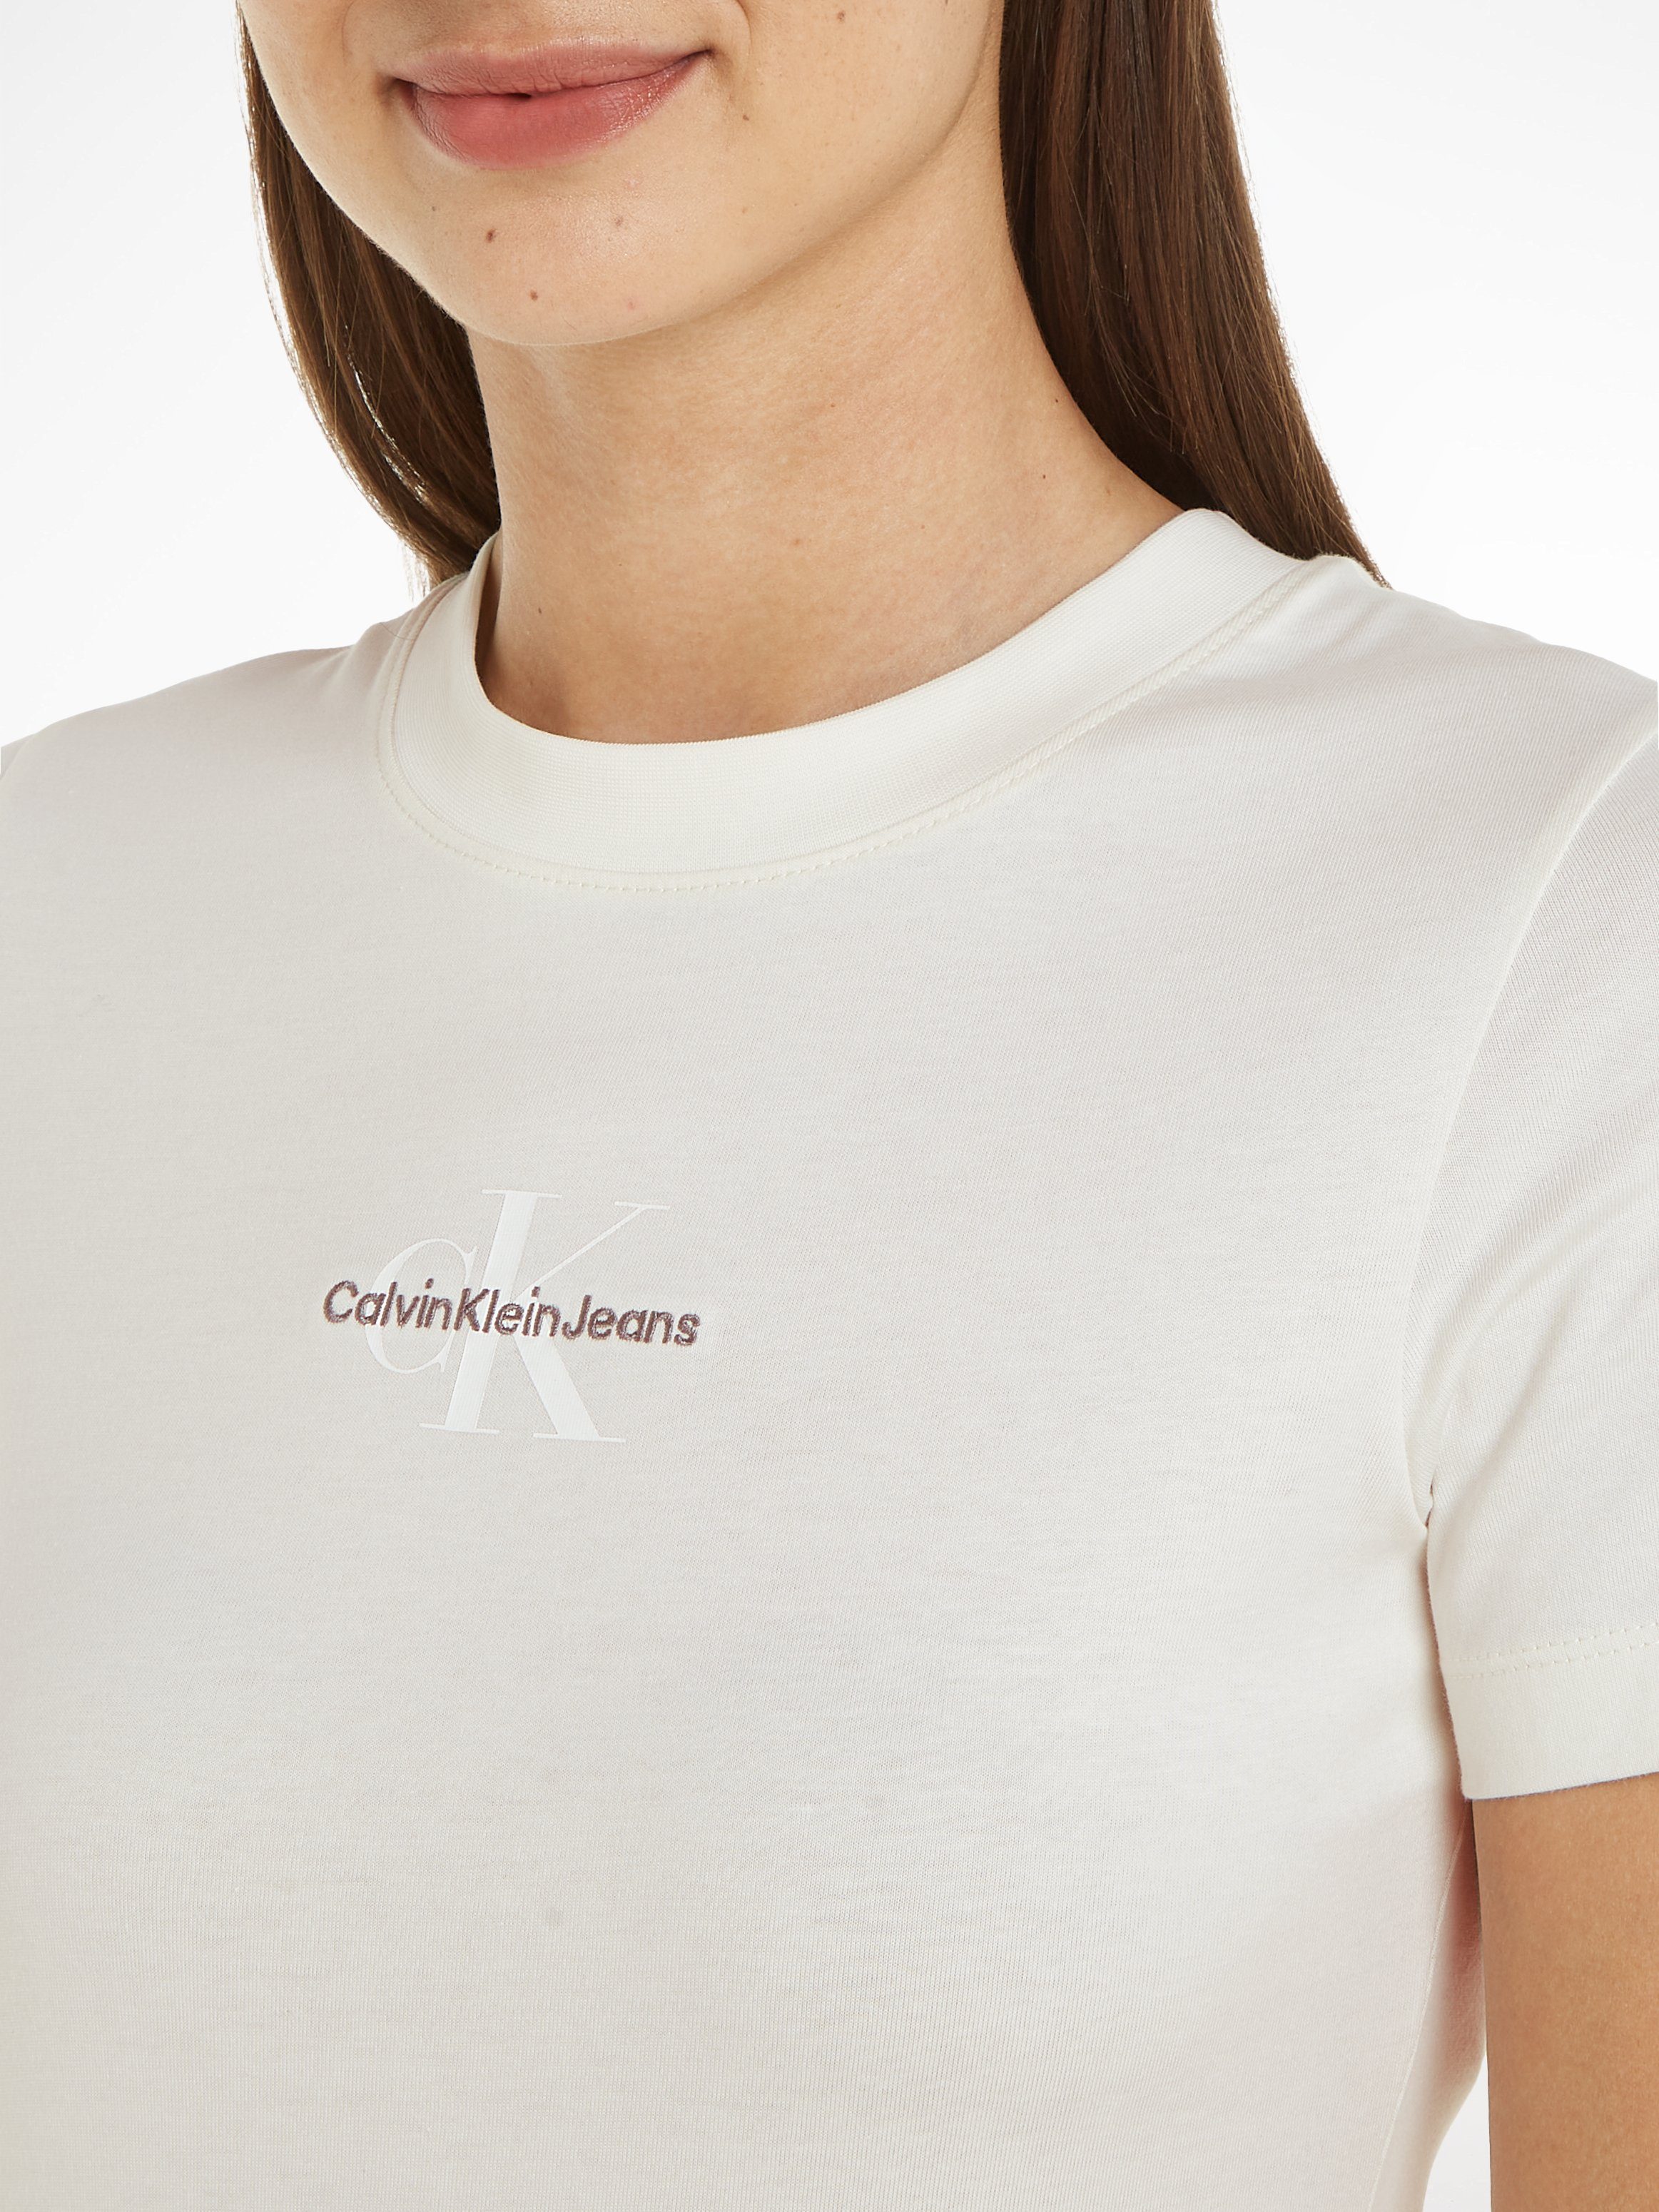 Calvin Klein Jeans T-Shirt MONOLOGO FIT ecru mit TEE SLIM Logodruck